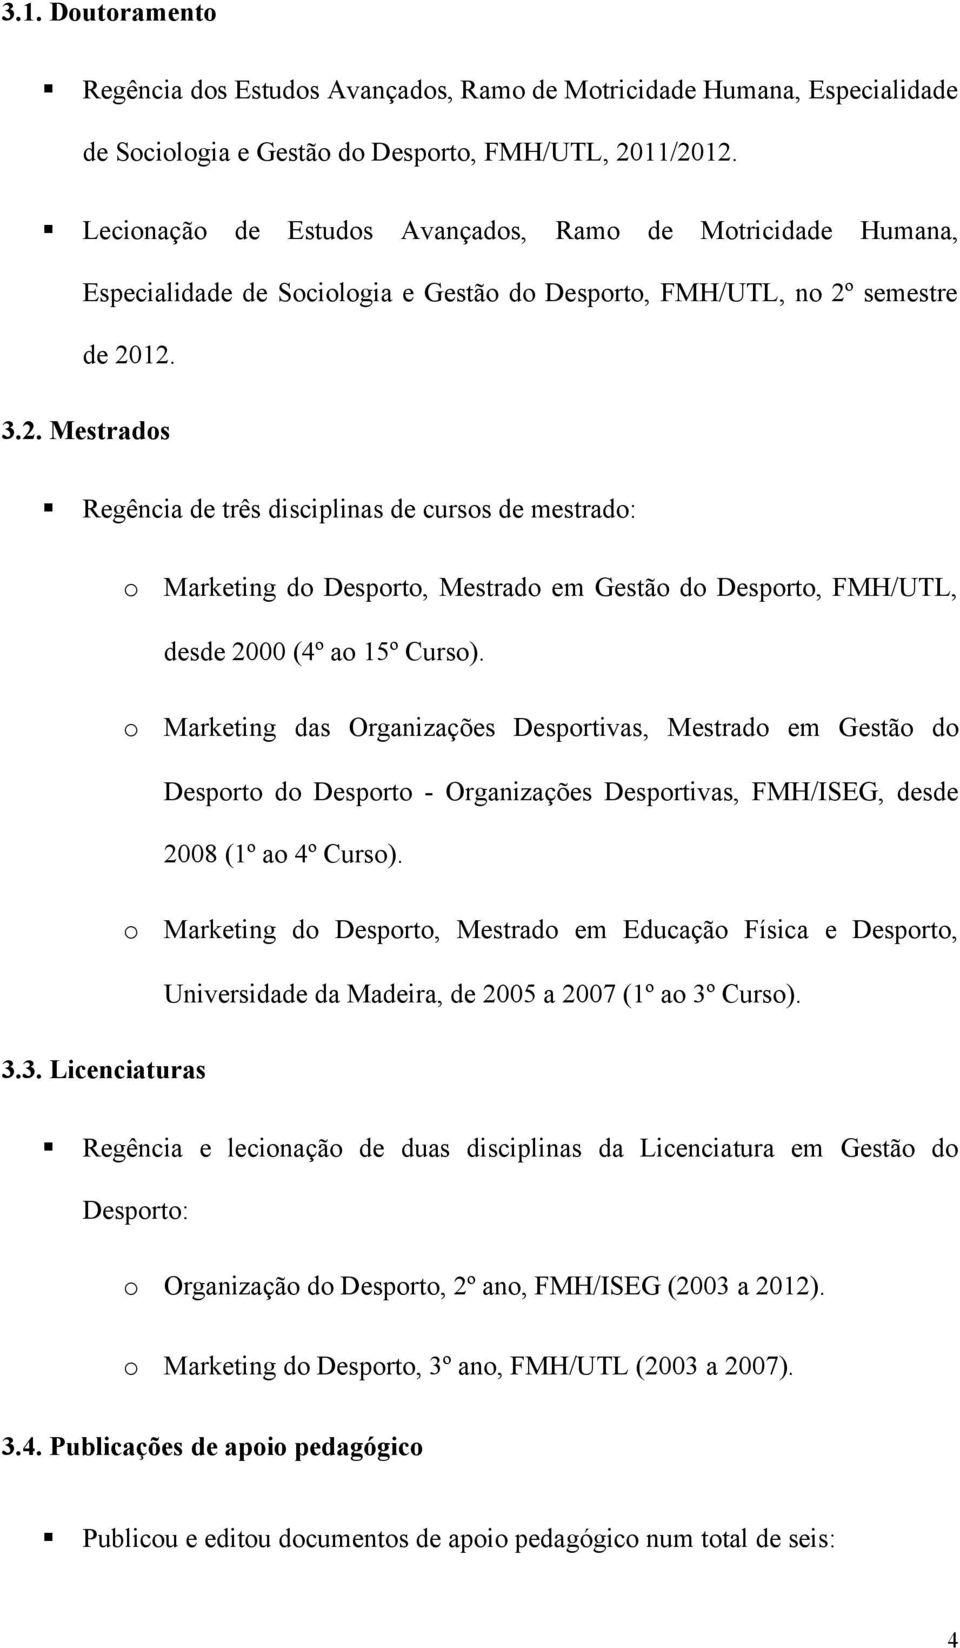 semestre de 2012. 3.2. Mestrads Regência de três disciplinas de curss de mestrad: Marketing d Desprt, Mestrad em Gestã d Desprt, FMH/UTL, desde 2000 (4º a 15º Curs).